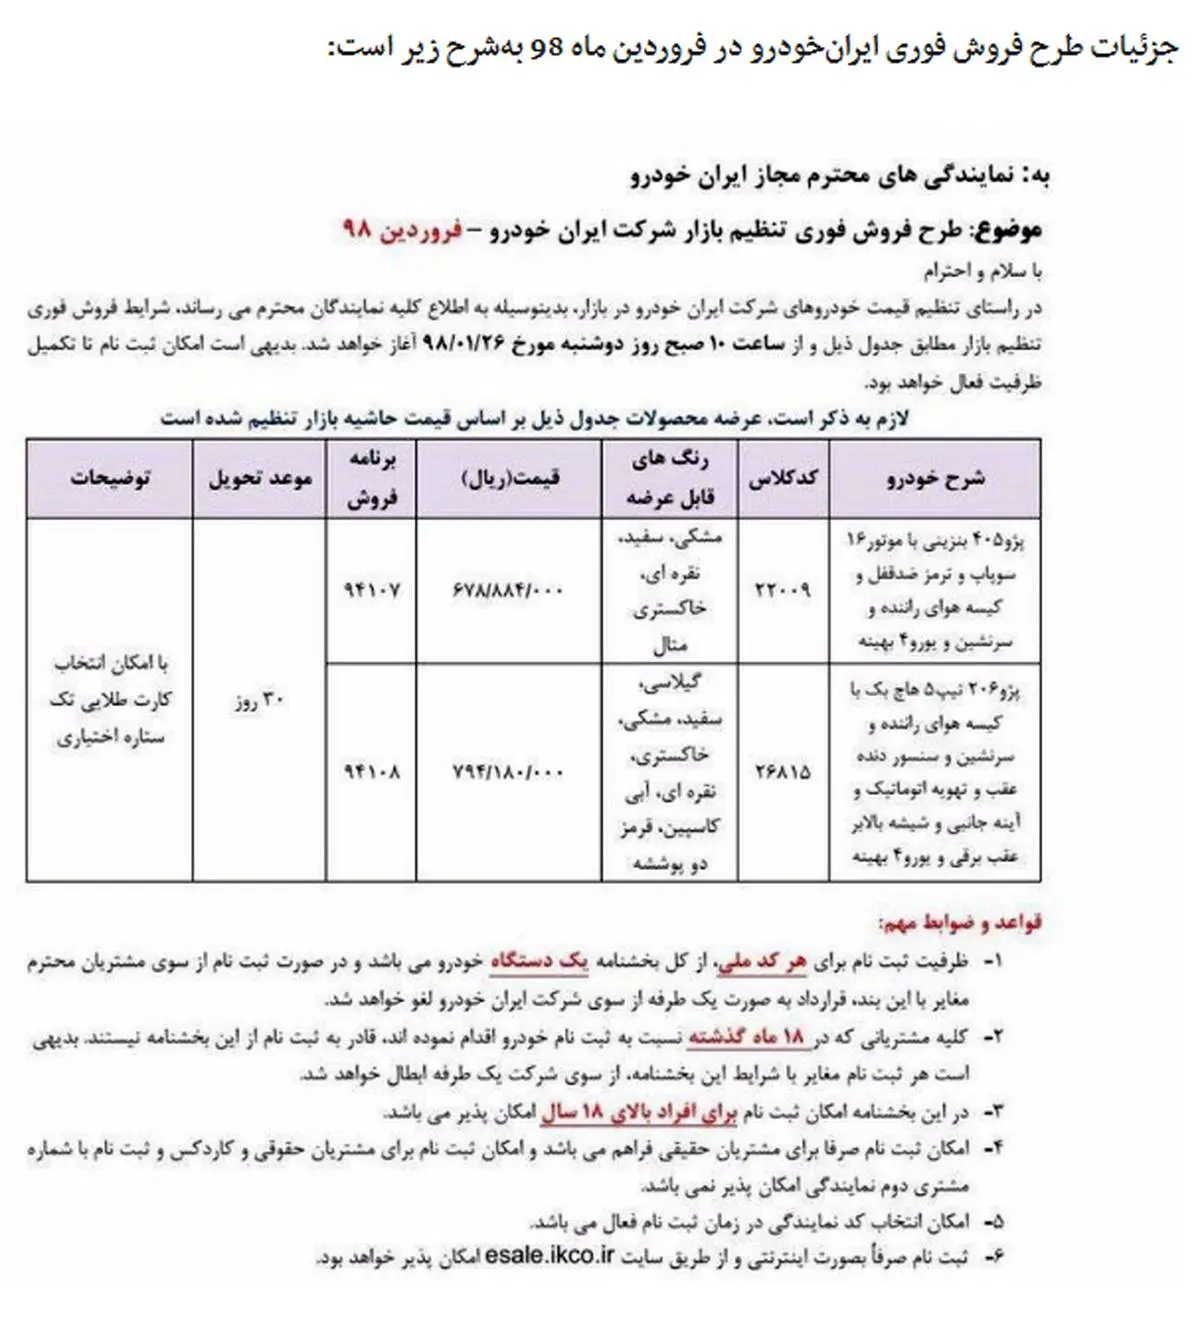 فروش فوری محصولات ایران خودرو از  26 فروردین + جدول